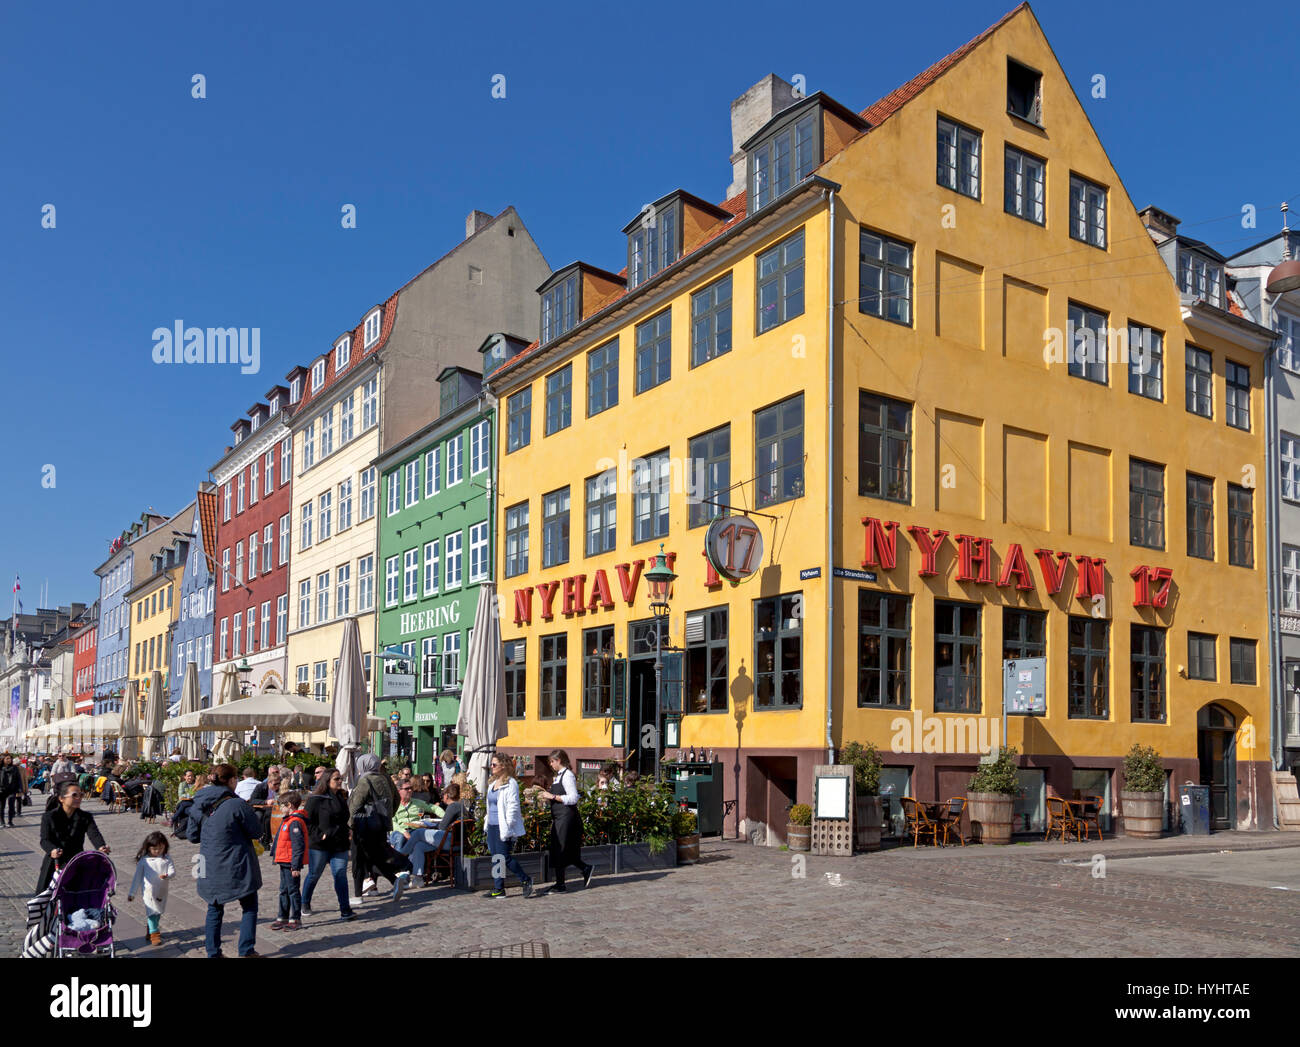 Die Hafenrestaurants in Nyhavn, Kopenhagen, Dänemark, locken viele Kopenhagener und Touristen an einem sonnigen Frühlingstag Anfang April Stockfoto